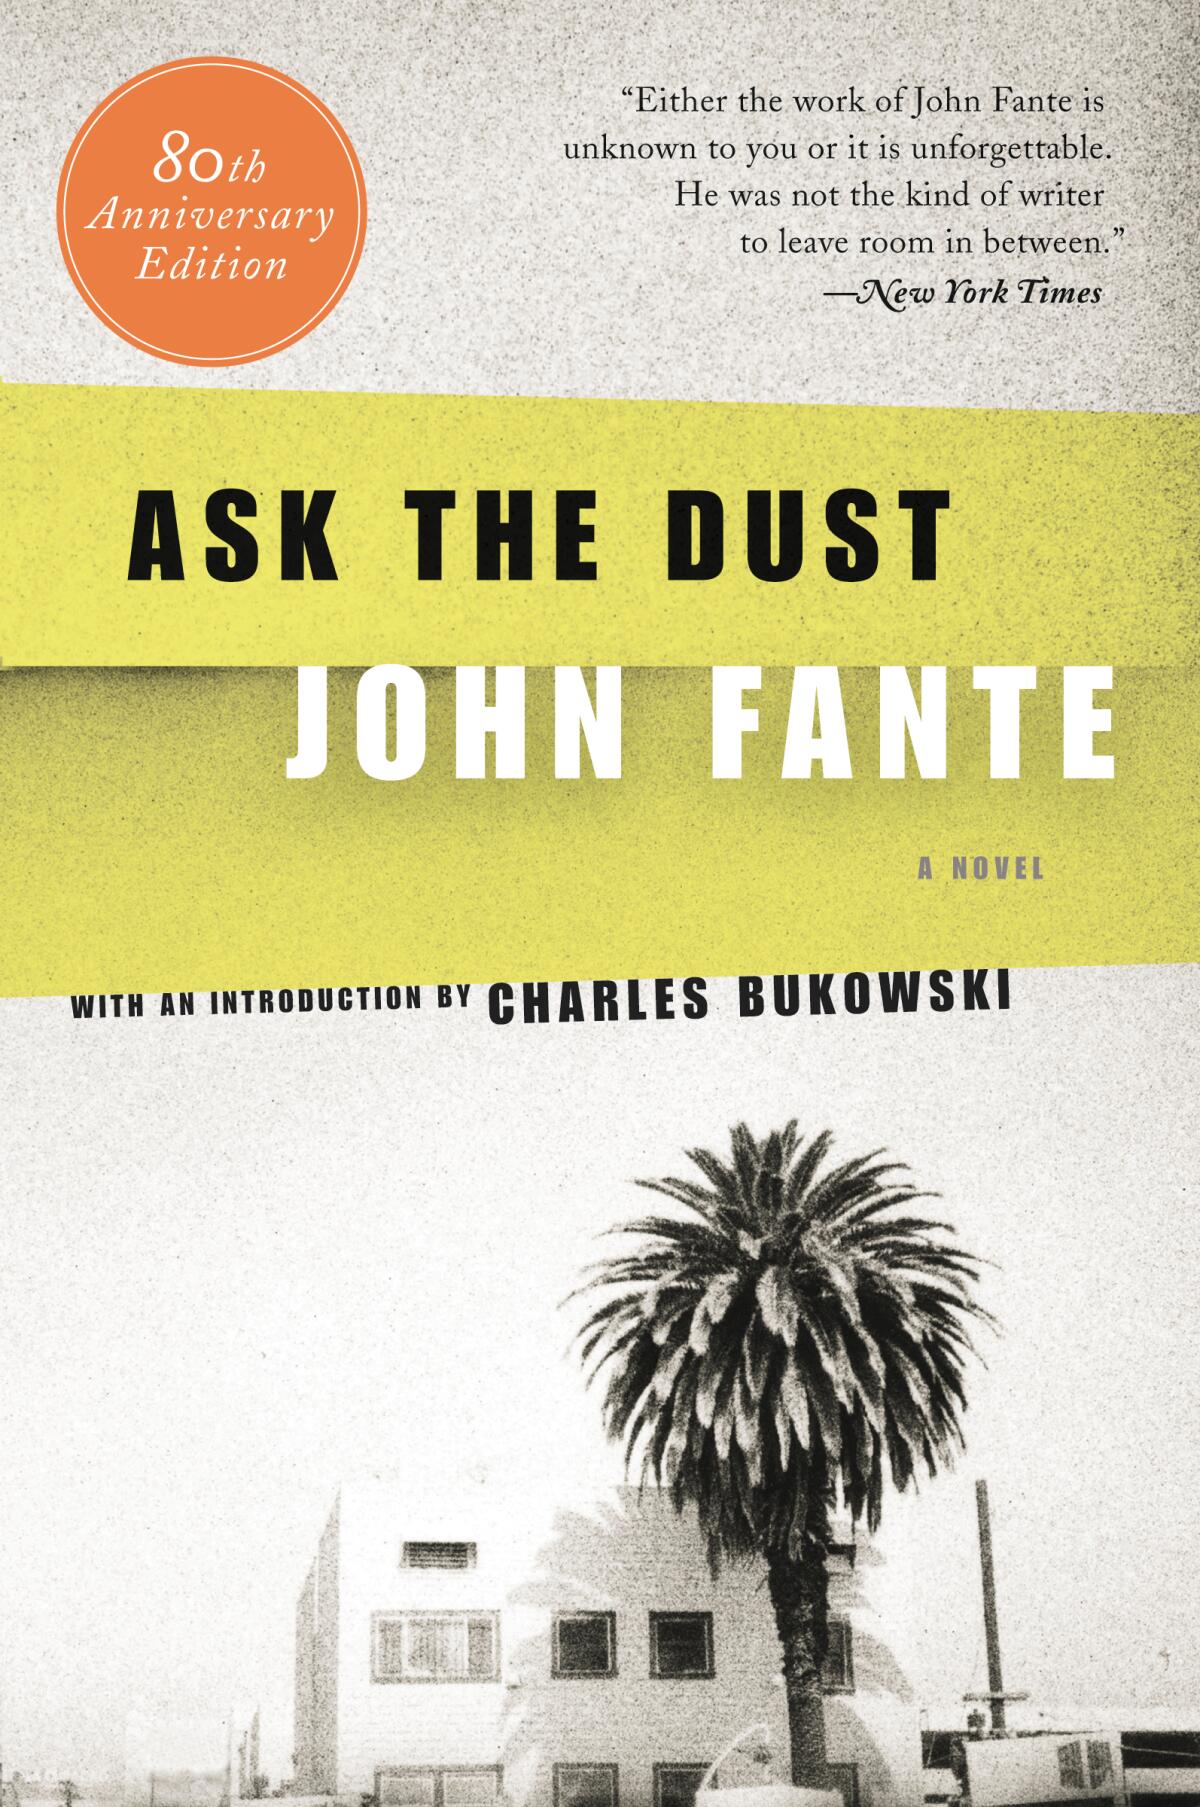 "Ask The Dust" by John Fante